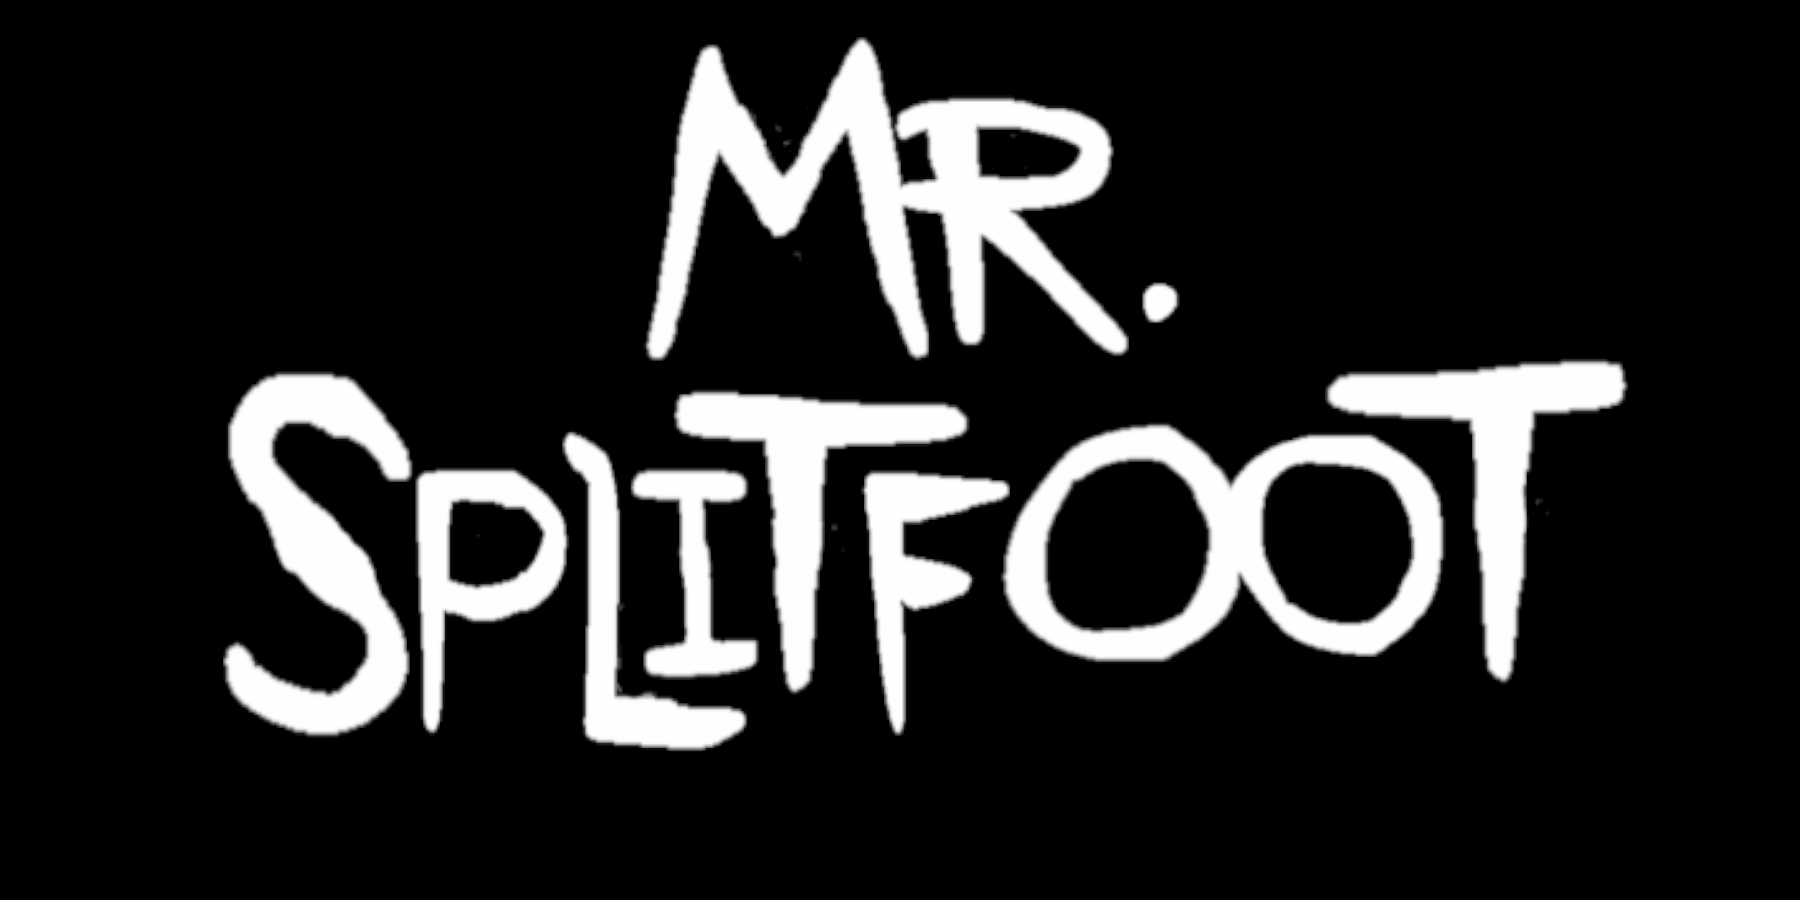 Mr. Splitfoot - "Pretty Dreams E.P."